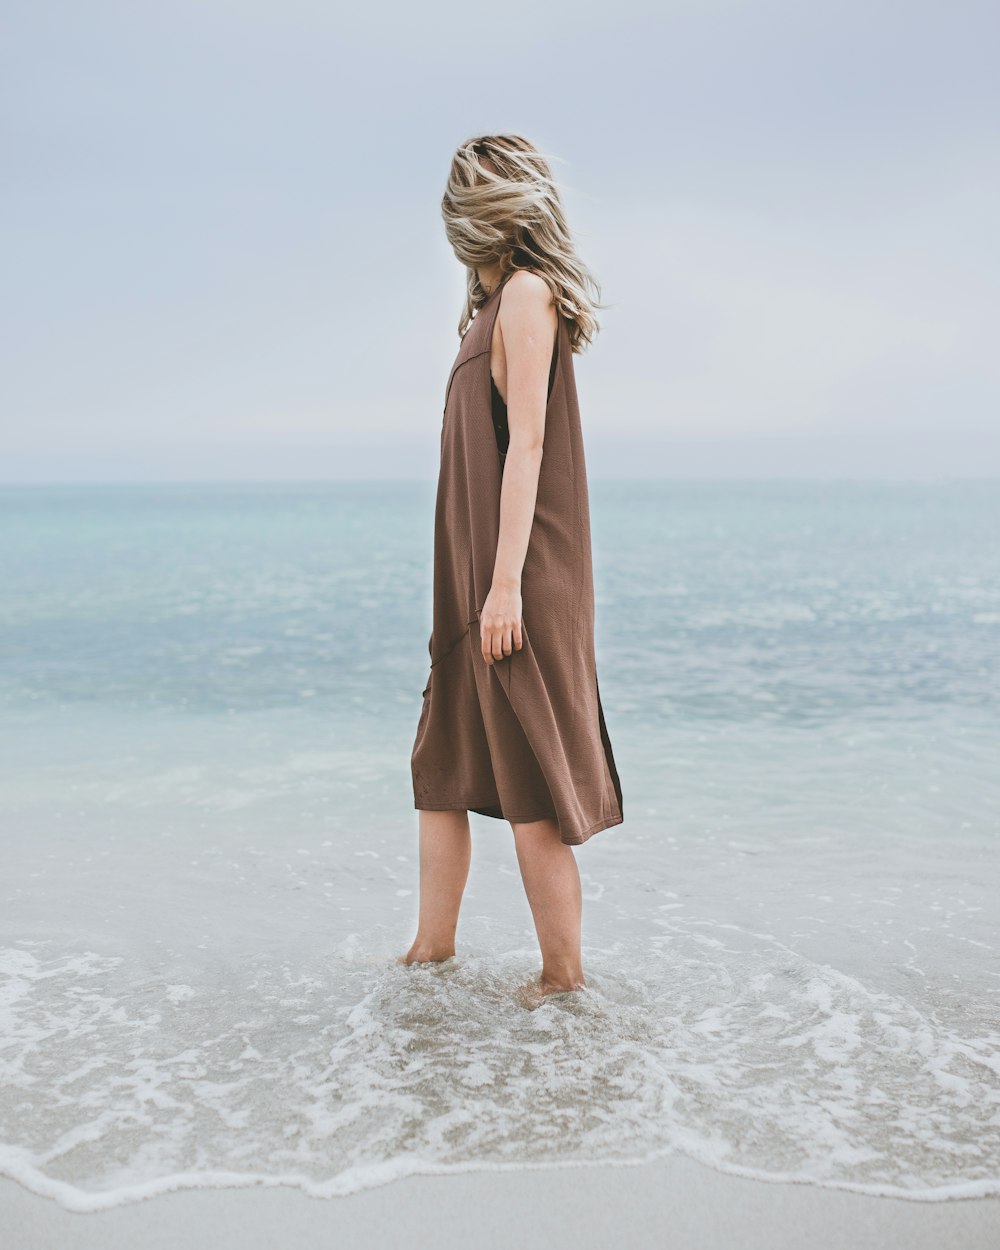 해변에서 물속에 서 있는 여자